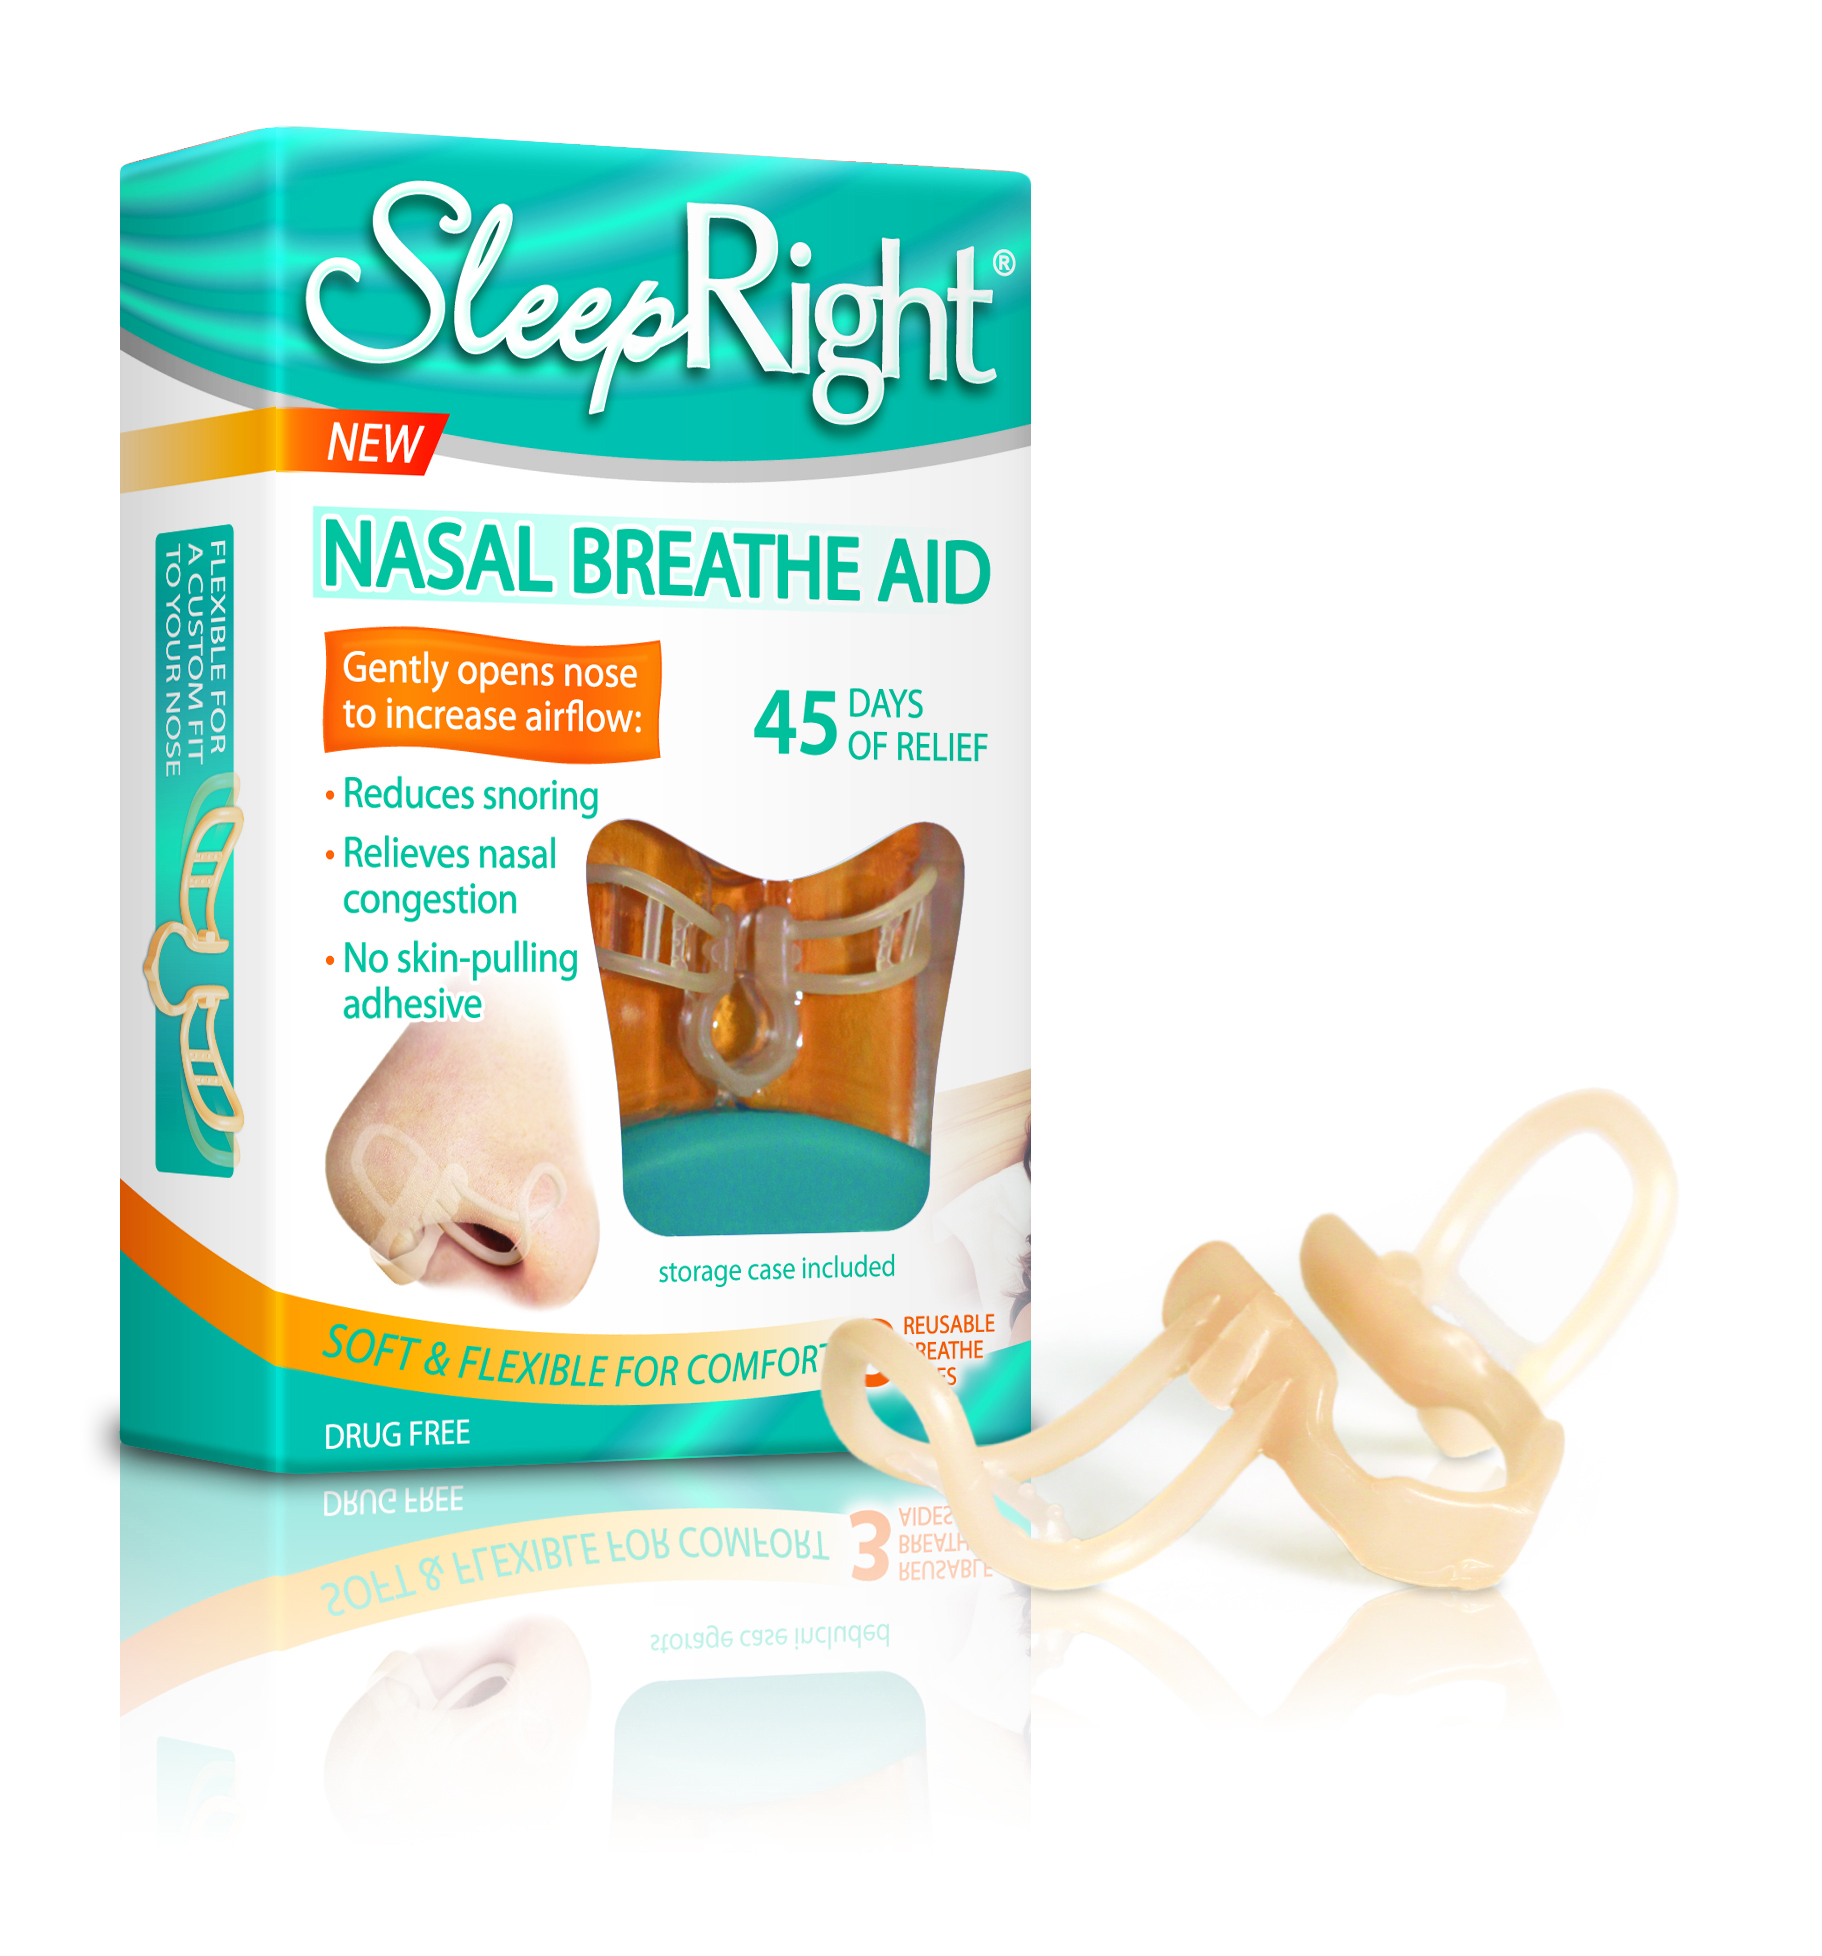 sleepright nasal breathe aid now available in cvs caremark